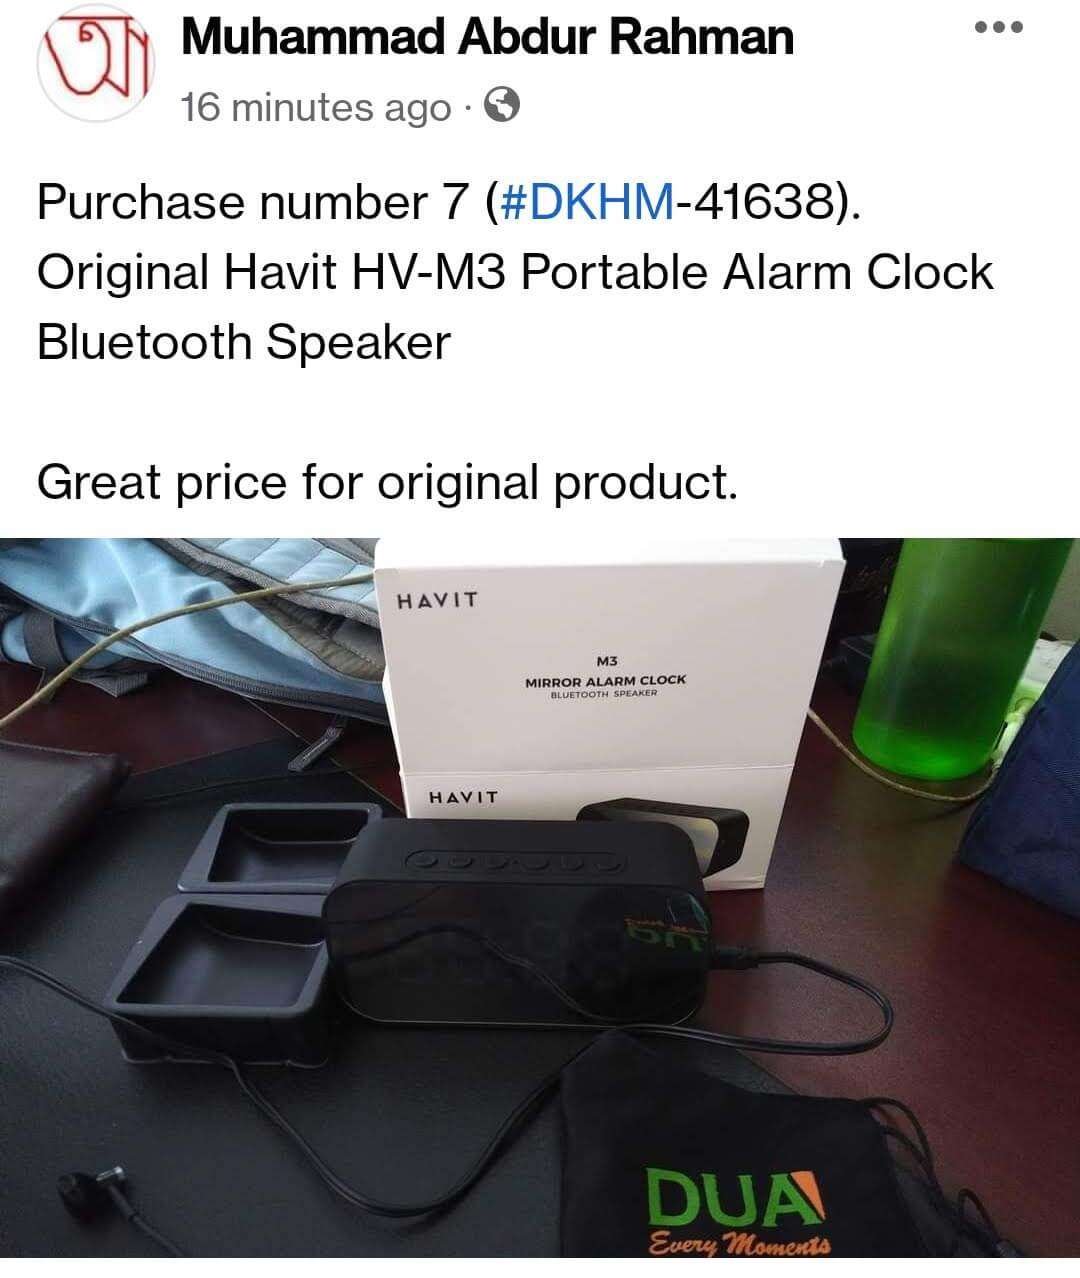 Original Havit HV-M3 Portable Alarm Clock Bluetooth Speaker